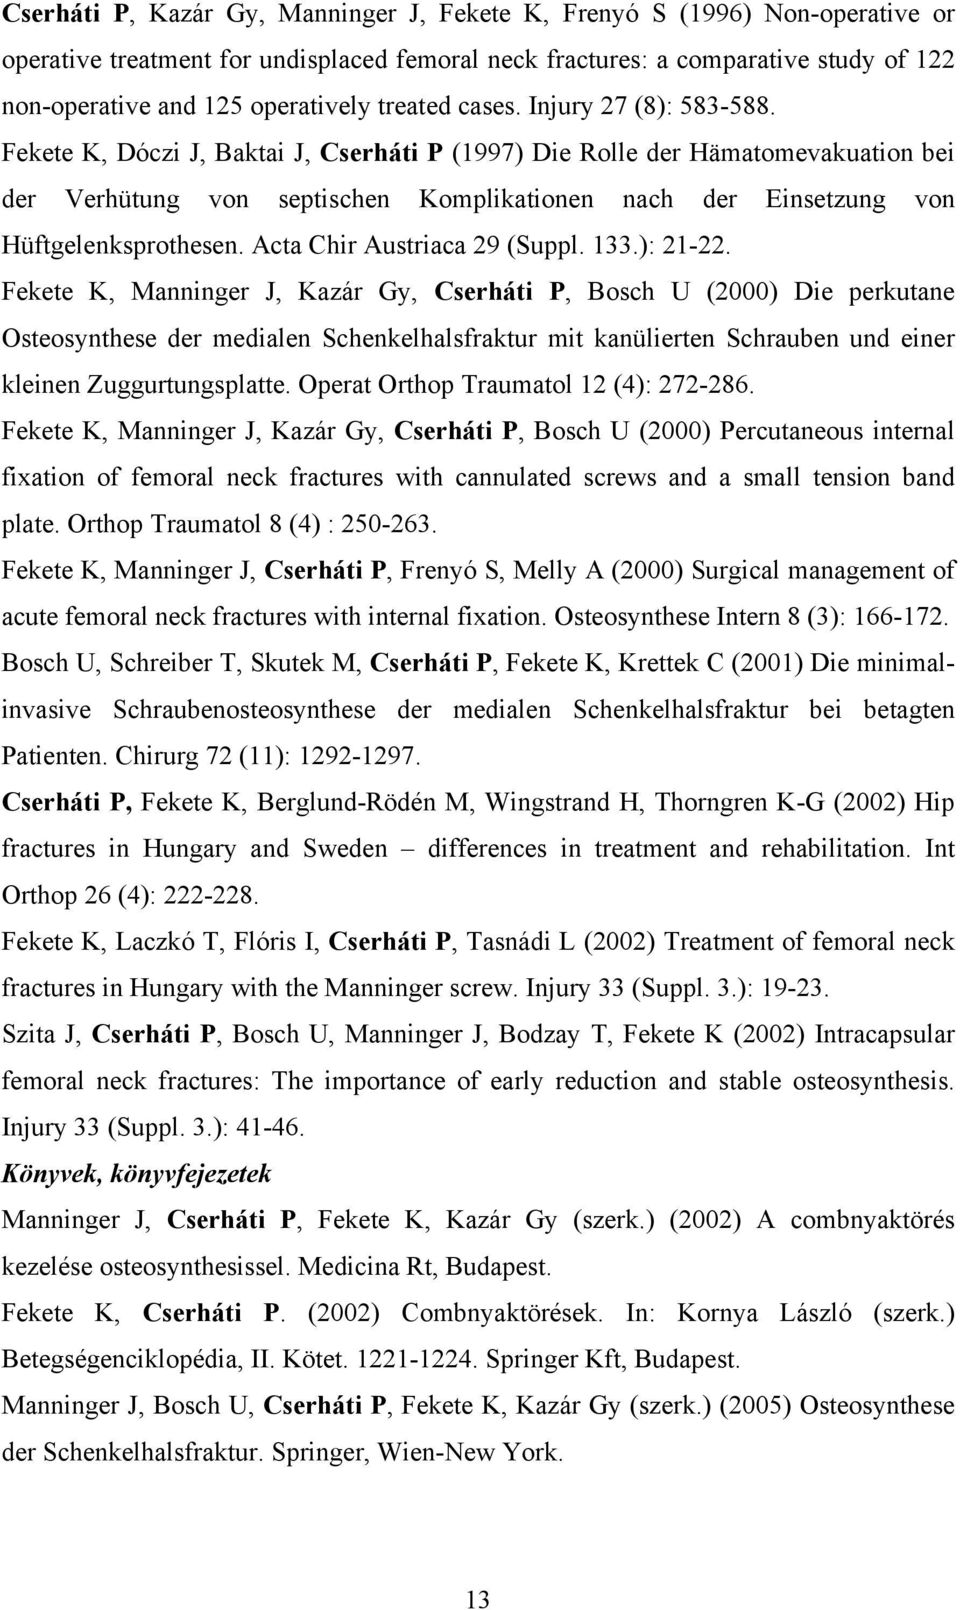 Fekete K, Dóczi J, Baktai J, Cserháti P (1997) Die Rolle der Hämatomevakuation bei der Verhütung von septischen Komplikationen nach der Einsetzung von Hüftgelenksprothesen.